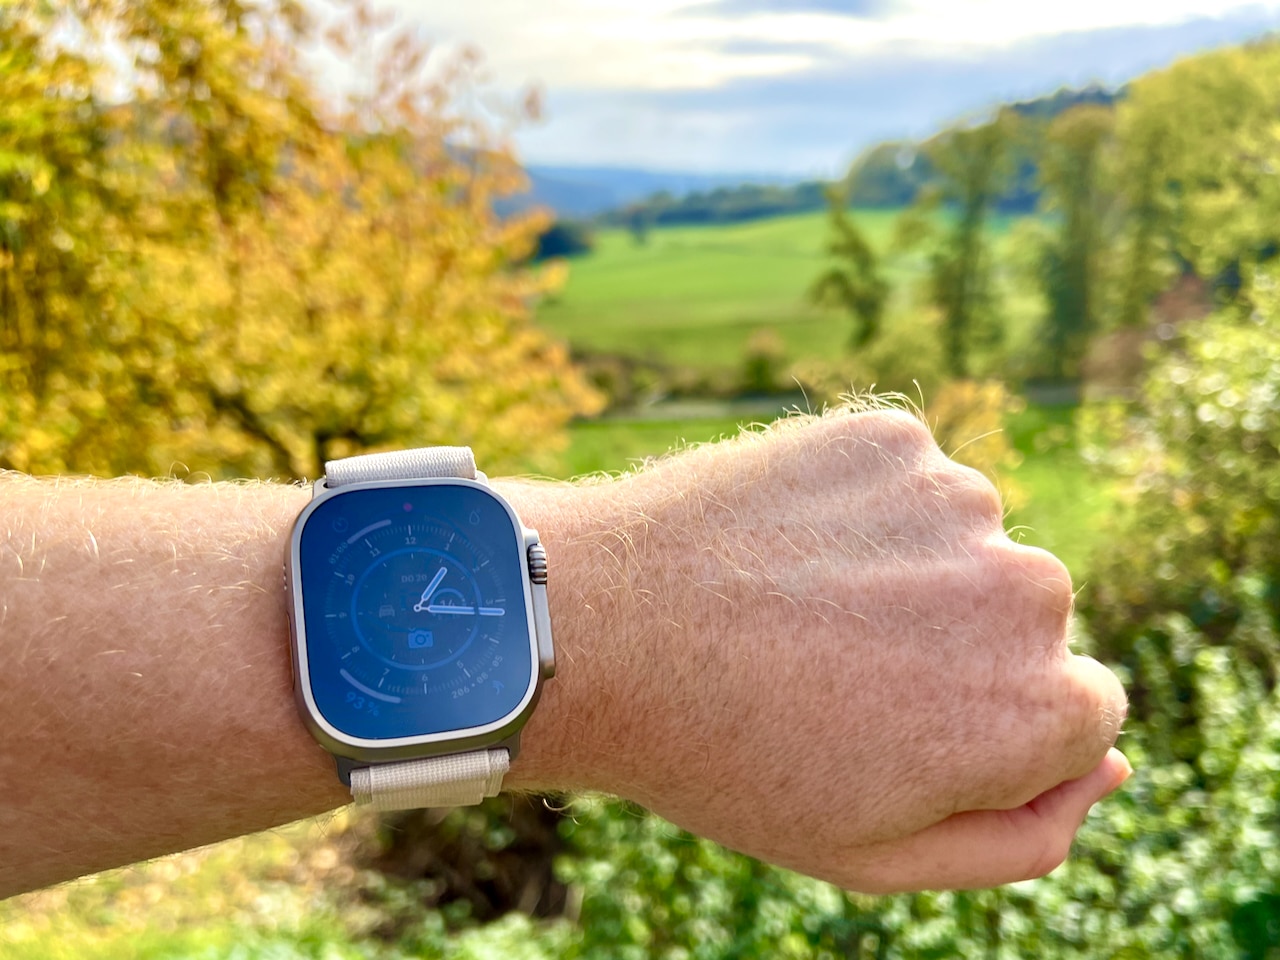 Apple Watch Ultratest & upplevelser - utomhussmartklocka för alla äventyr?